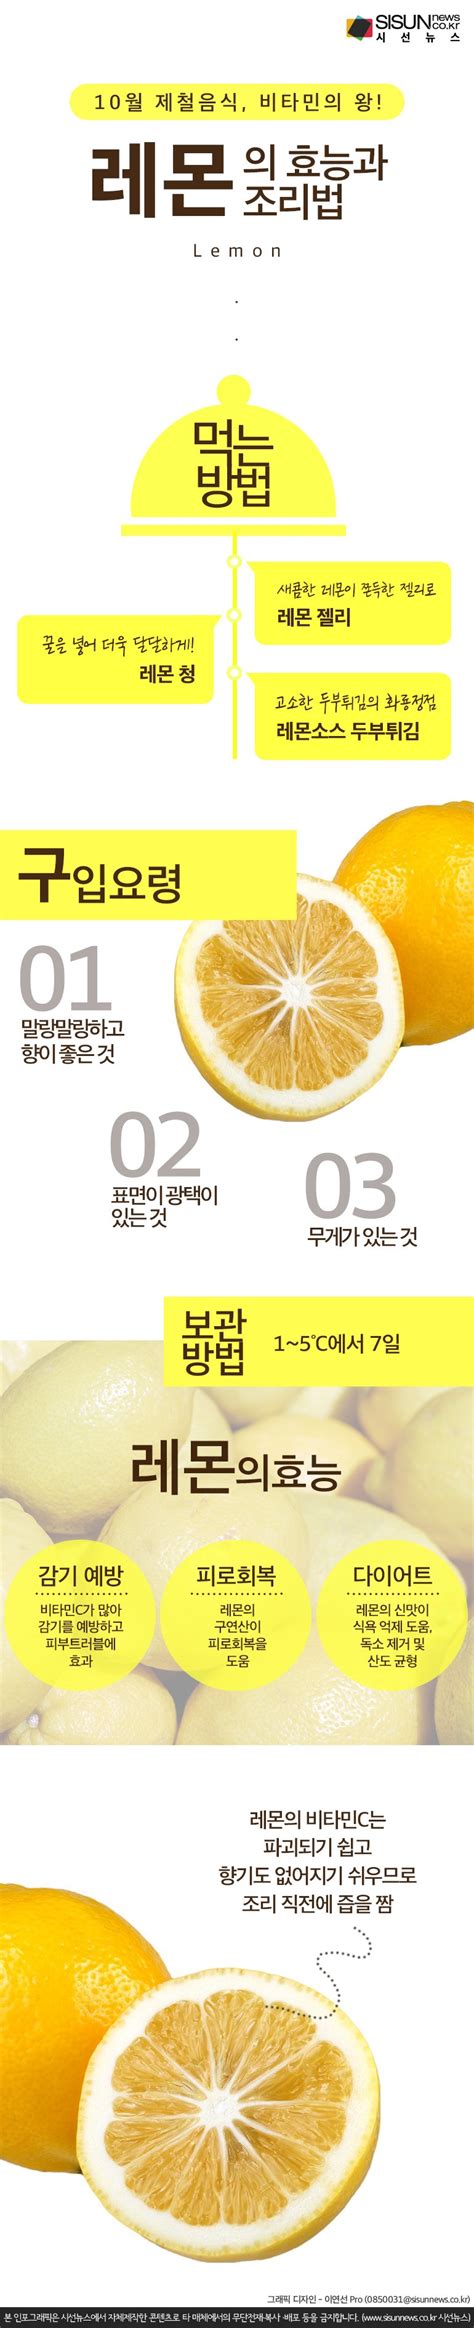 레몬 이용법